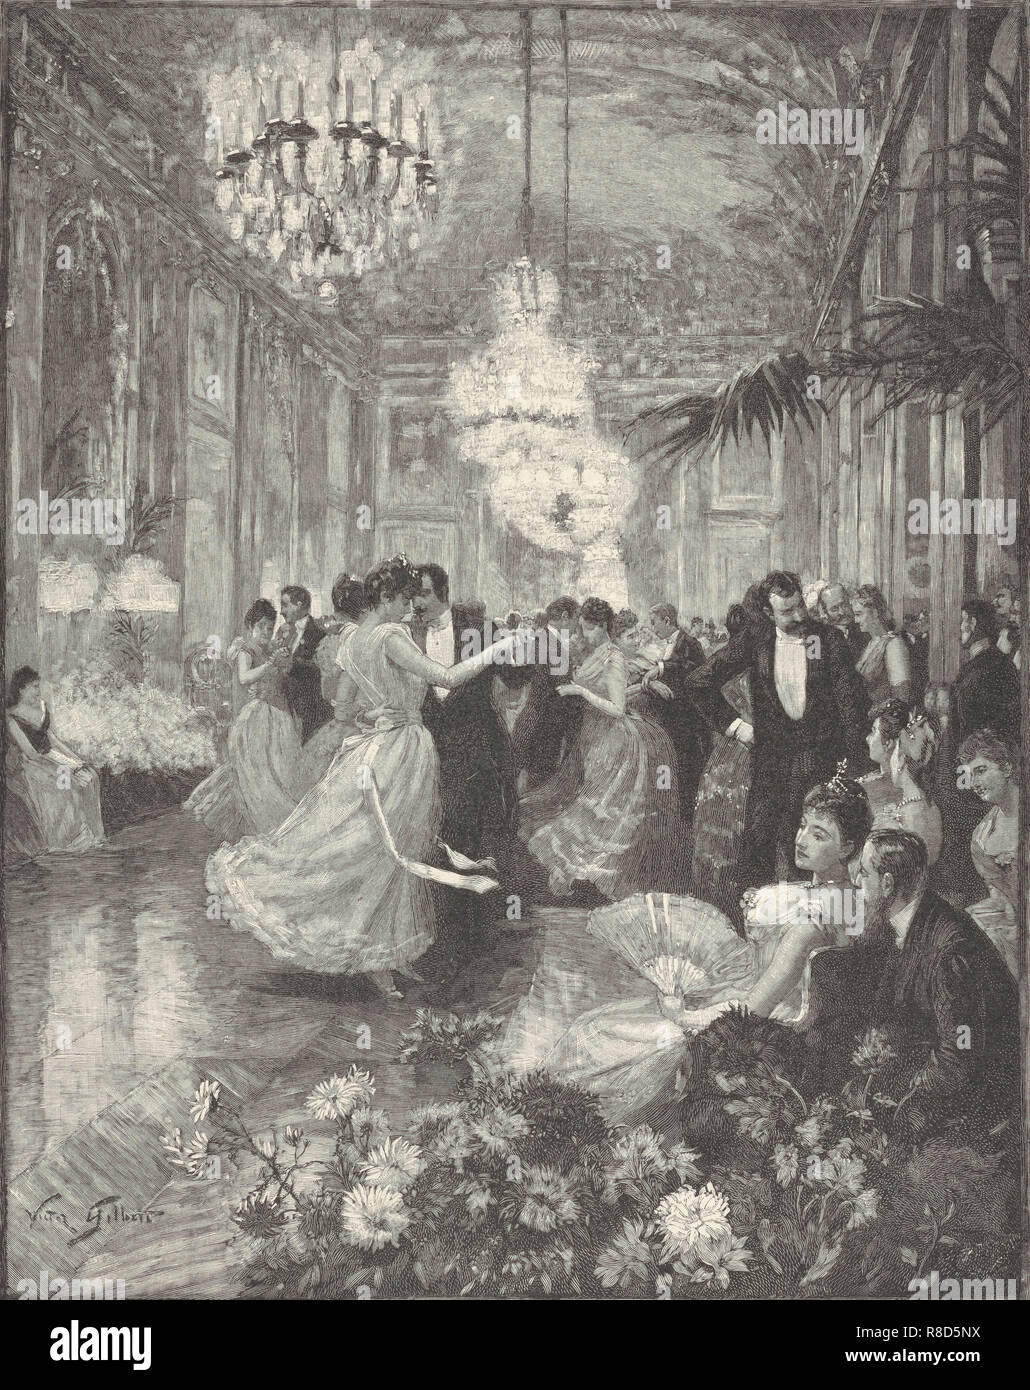 Waltz, 1898. Stock Photo